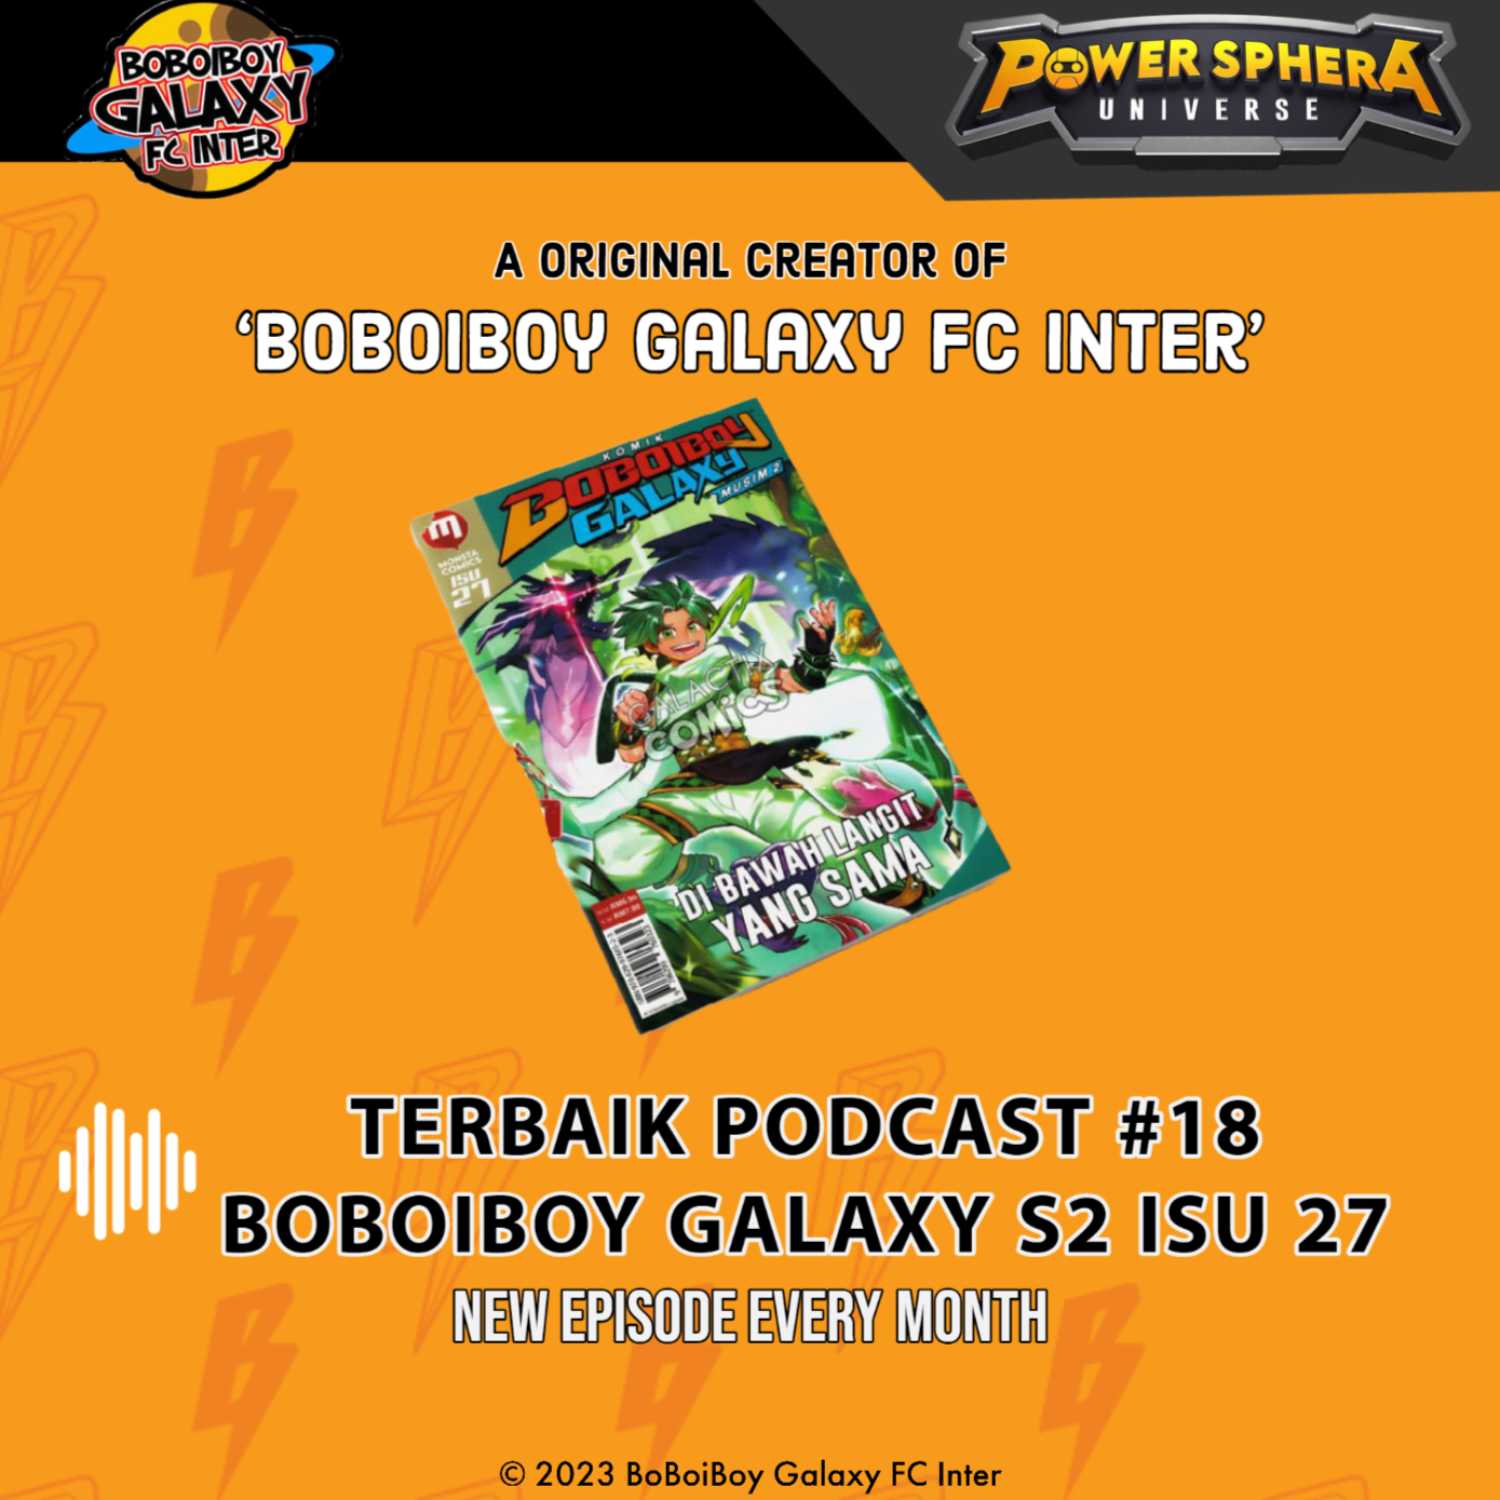 Terbaik Podcast #18 - BoBoiBoy Galaxy Season 2 isu 27 Spoiler